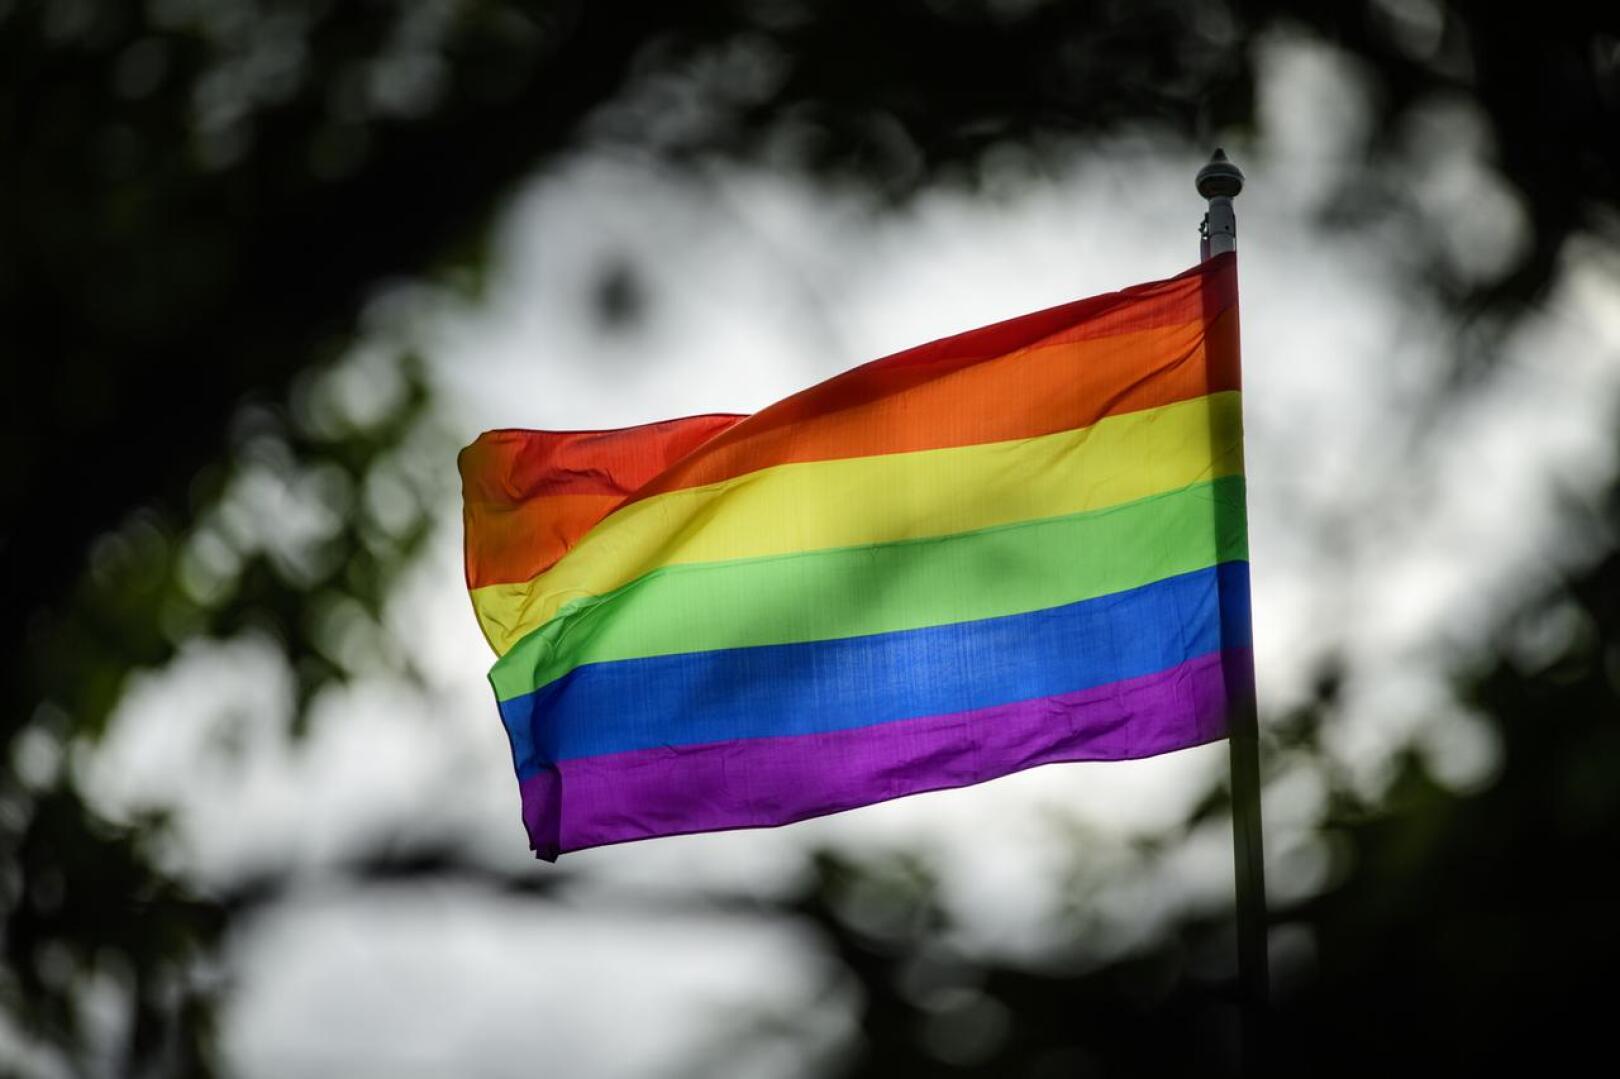 Keskustelu Pride-liputuksesta jatkuu. Kokkolan kaupunginvaltustossa asiasta lähes varmasti äänestetään maanantaina 19. lokakuuta.